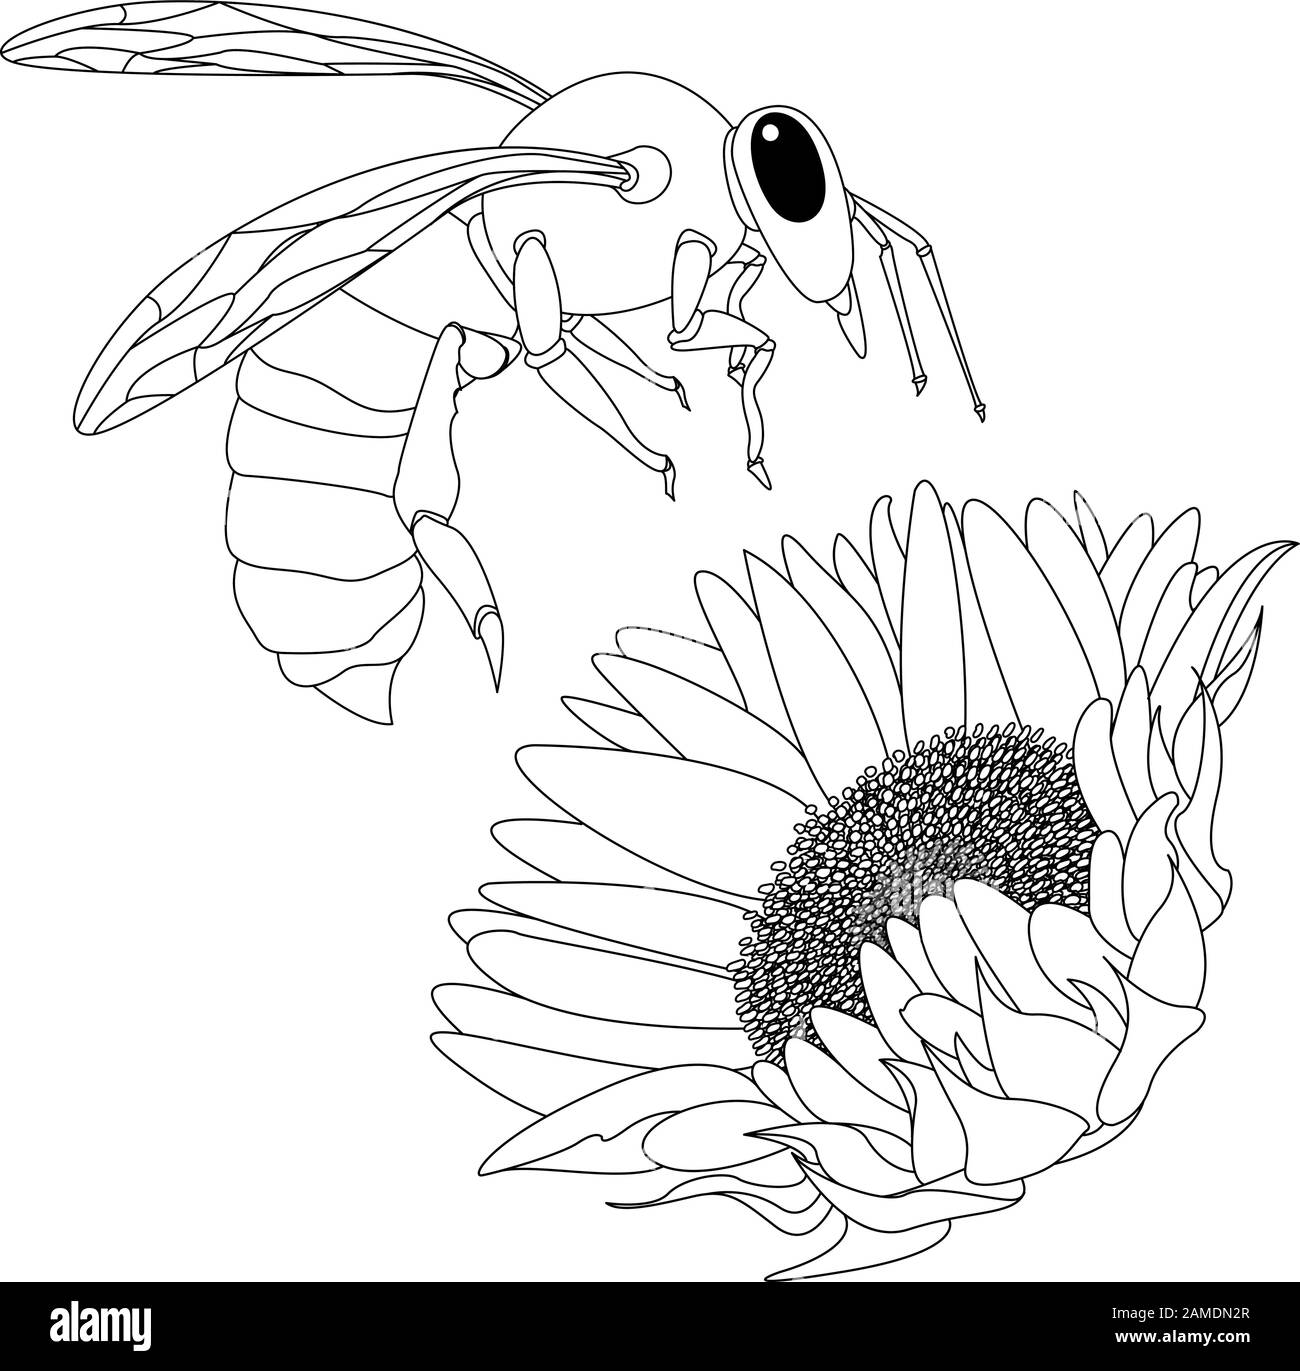 Immagine vettoriale di ape di miele su sfondo bianco. Immagine a colori. Illustrazione Vettoriale